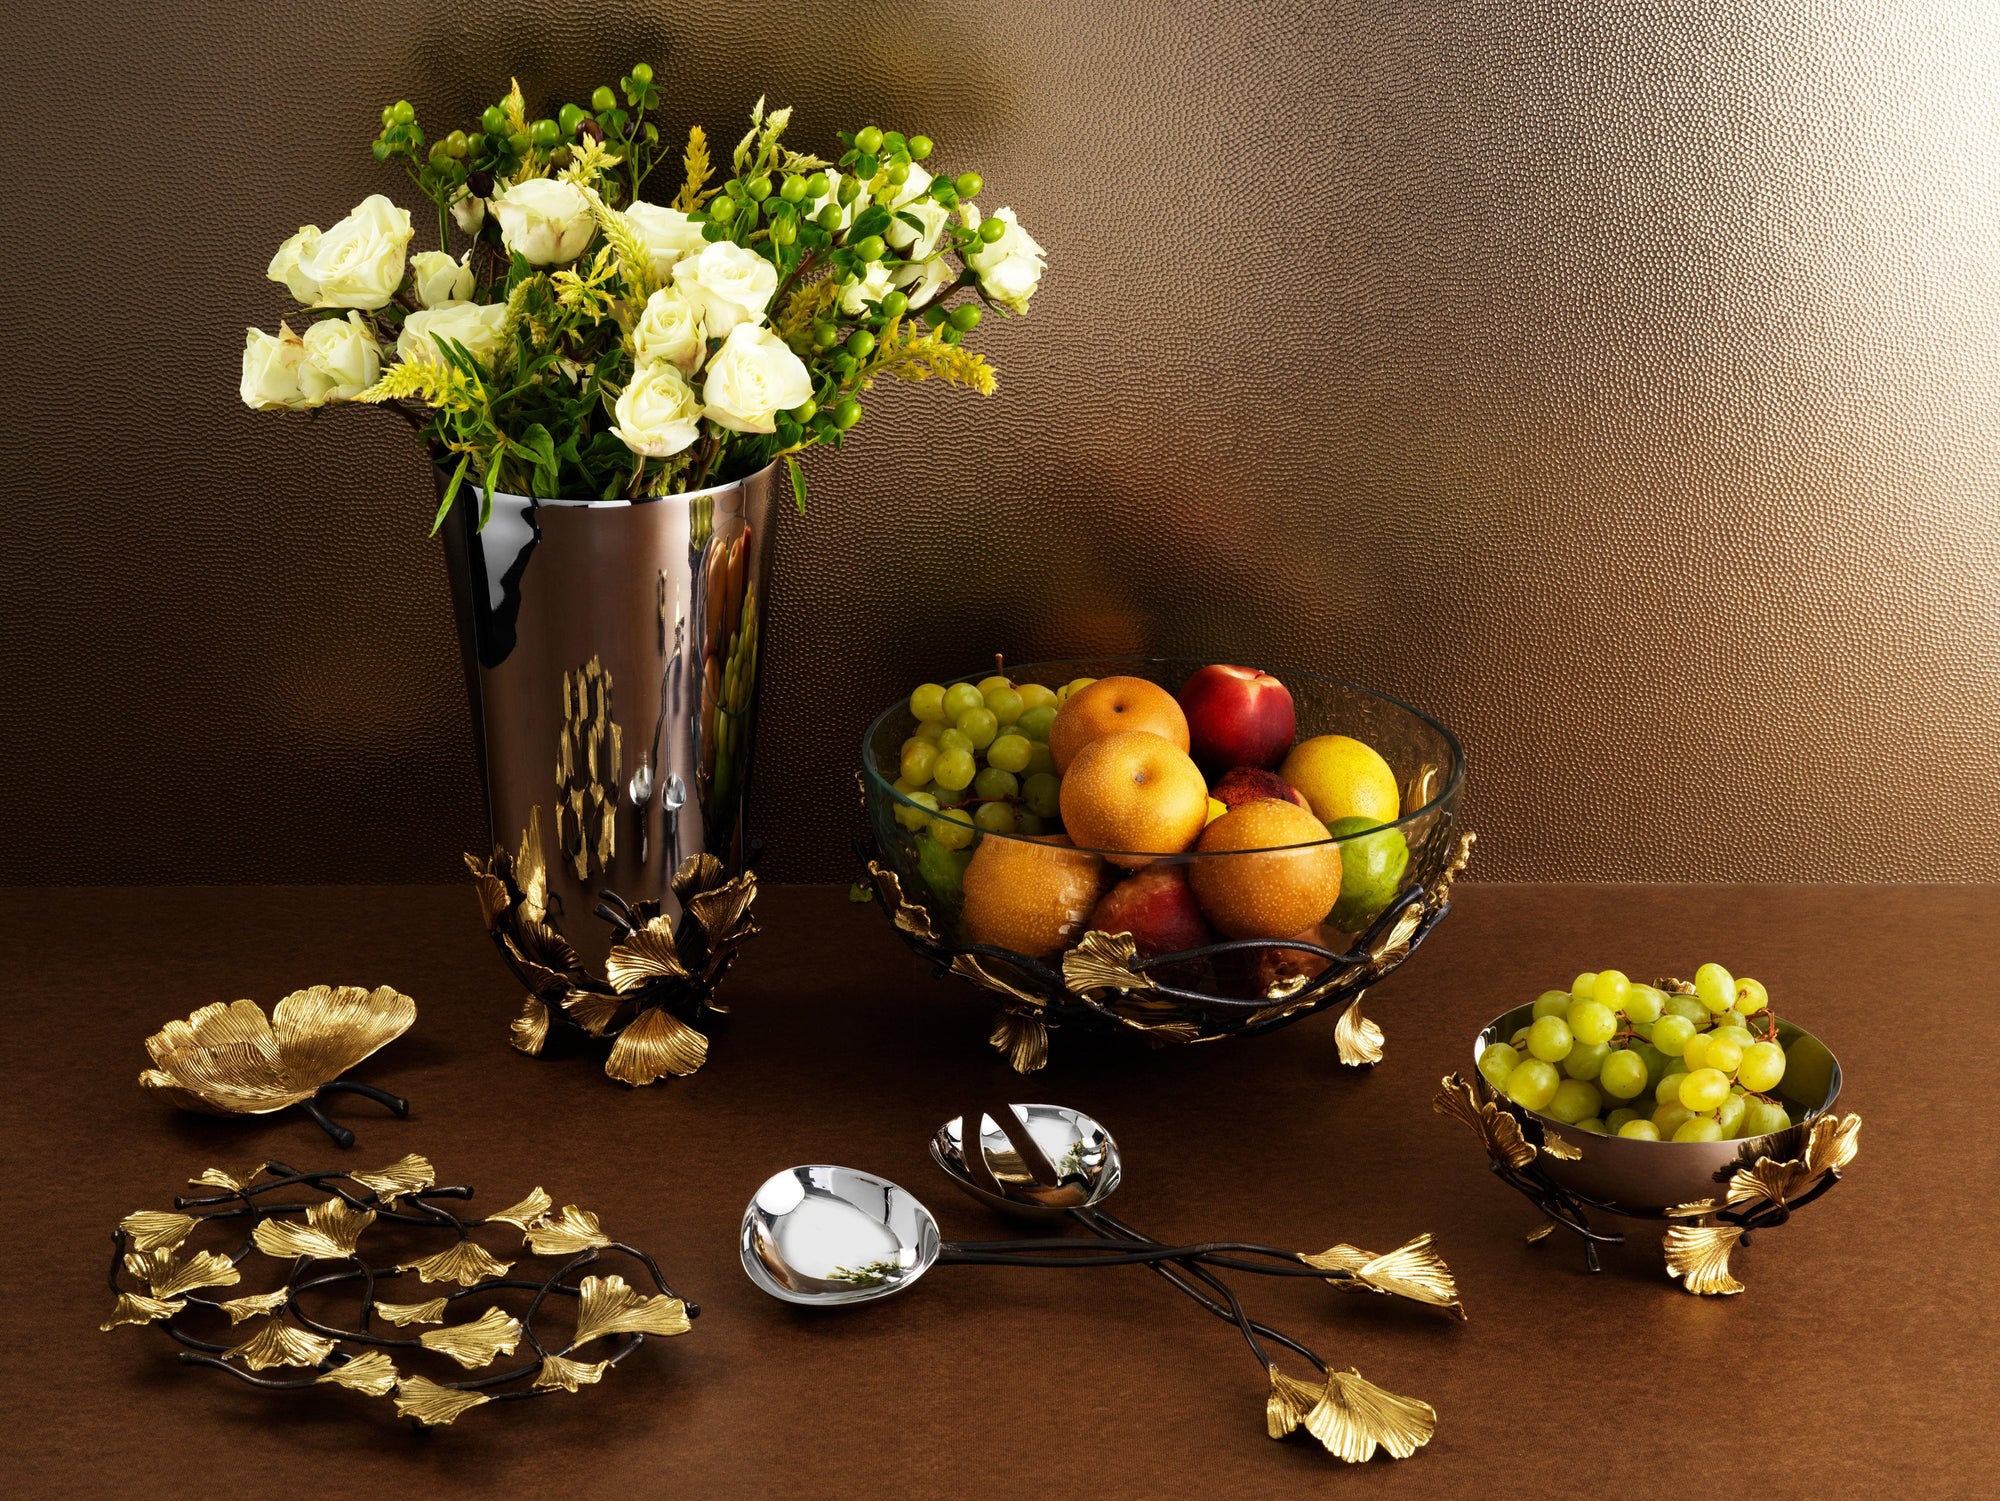 Meet the New Michael Aram Spring Collection: Golden Ginkgo - Michael Aram